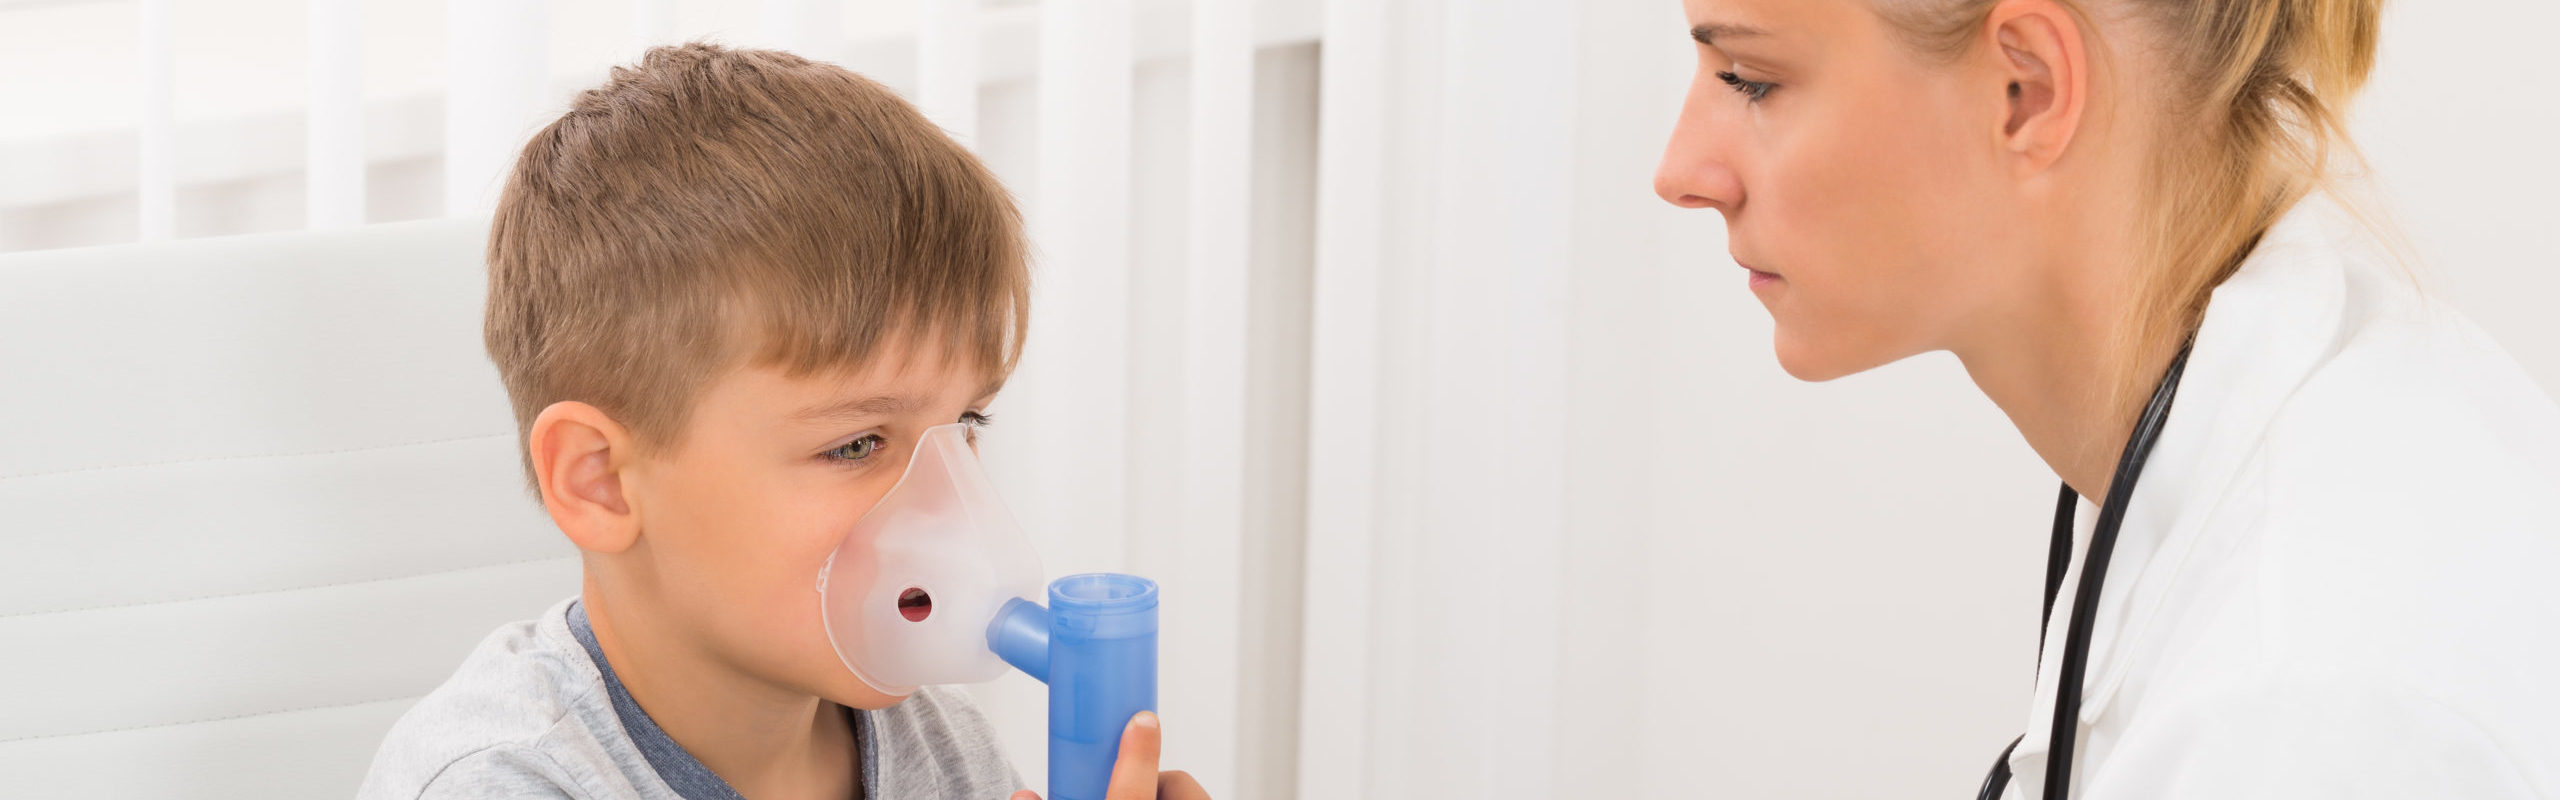 Child Patient Inhaling Through Oxygen Mask